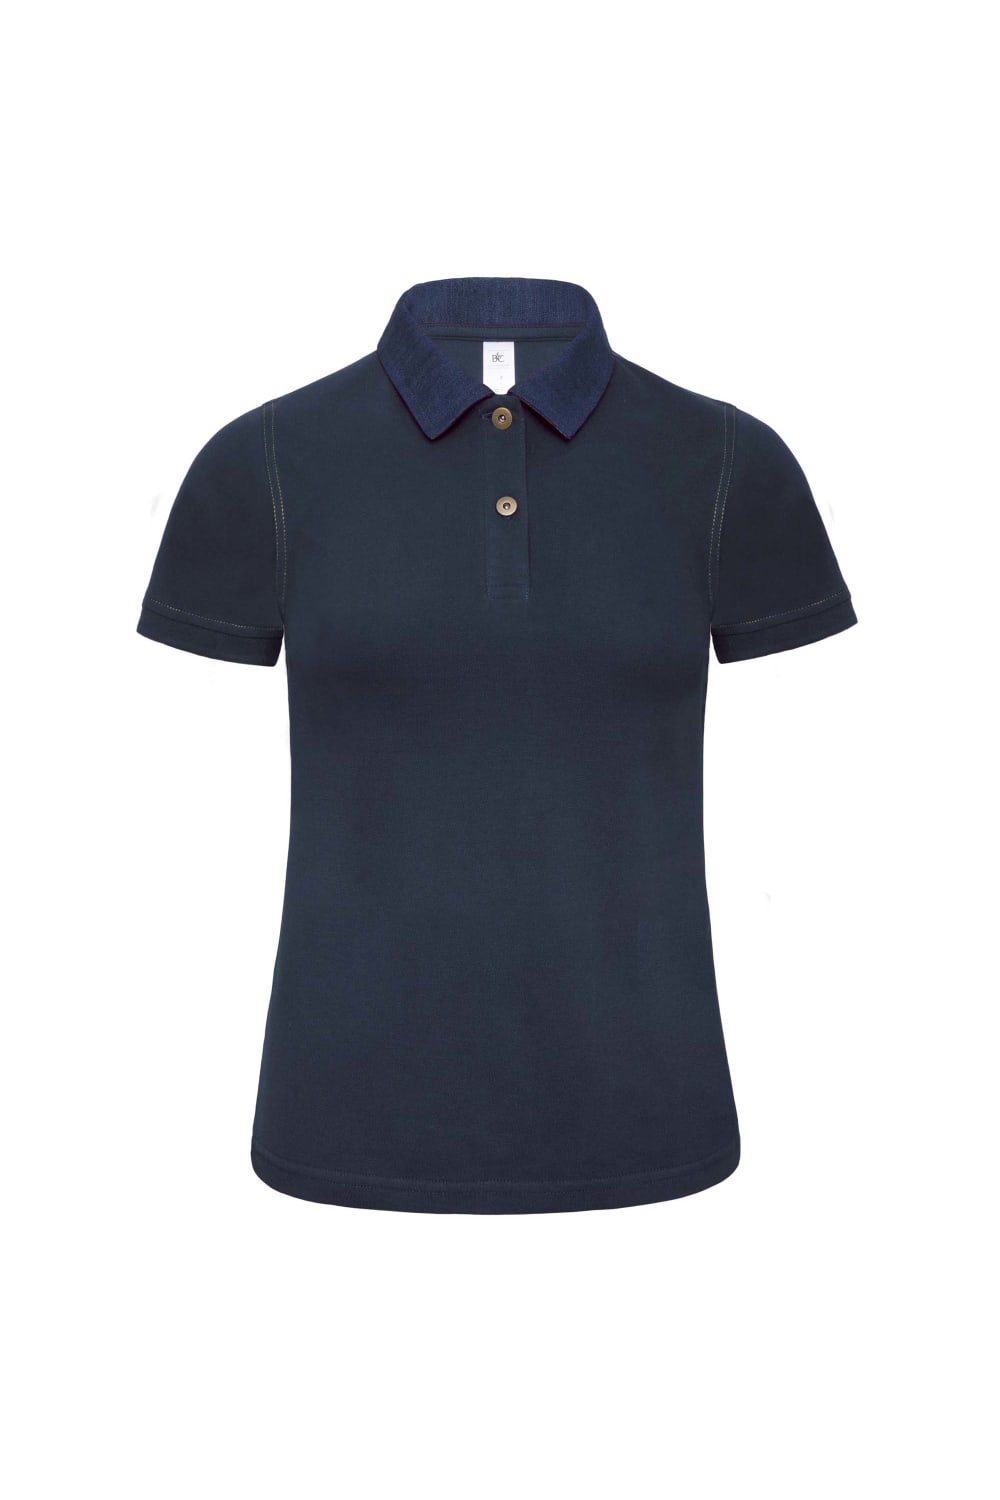 B&C Denim Womens/Ladies Forward Short Sleeve Polo Shirt (Denim/ Navy)